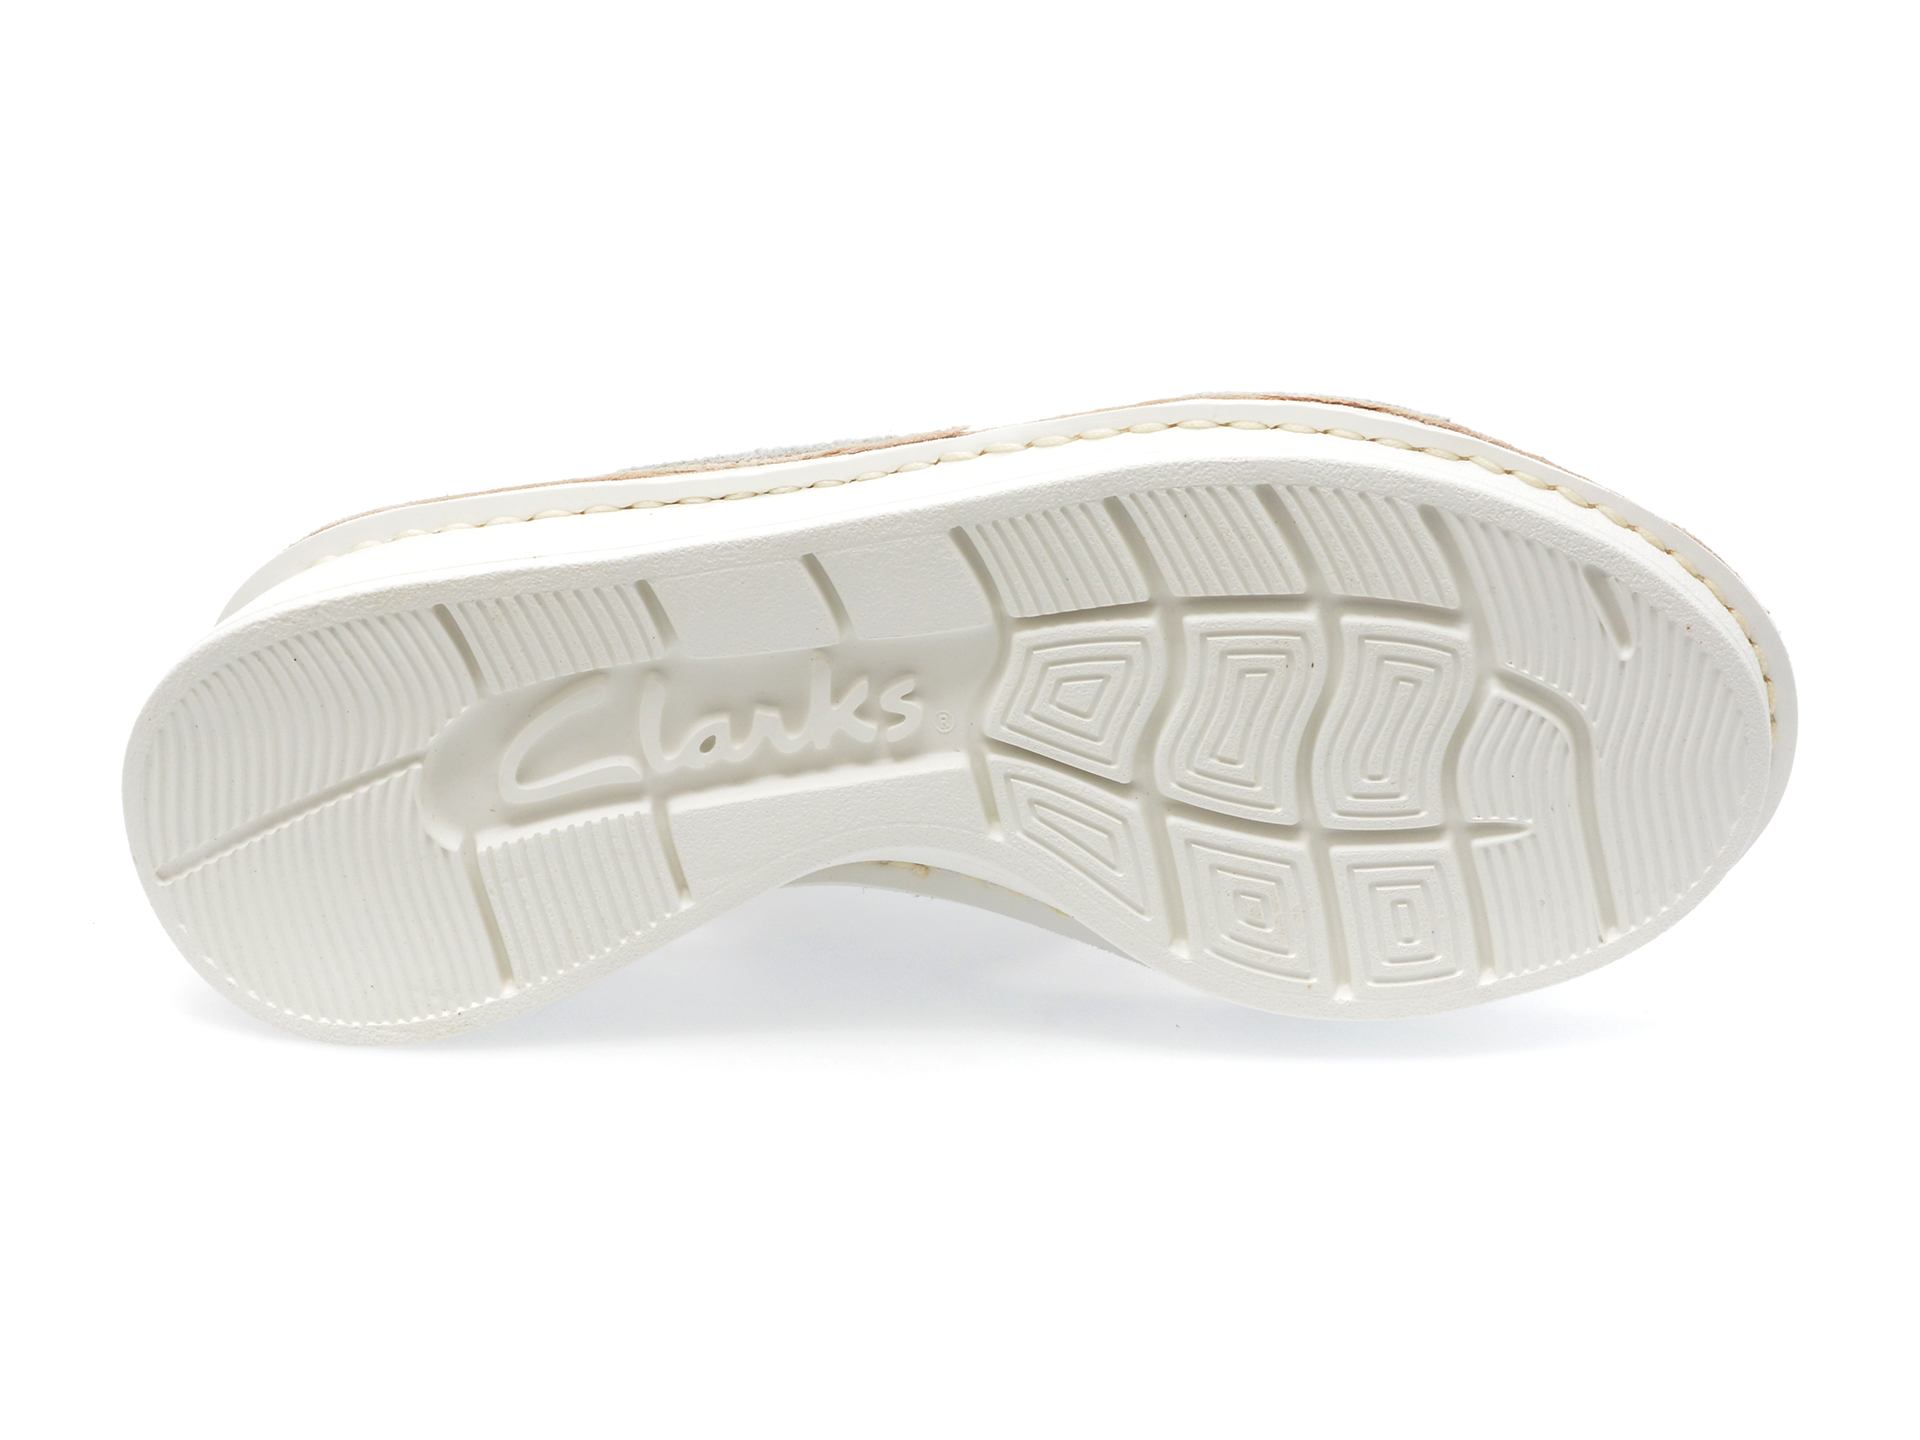 Poze Sandale CLARKS albe, VELHILL STRAP 13-N, din piele naturala otter.ro